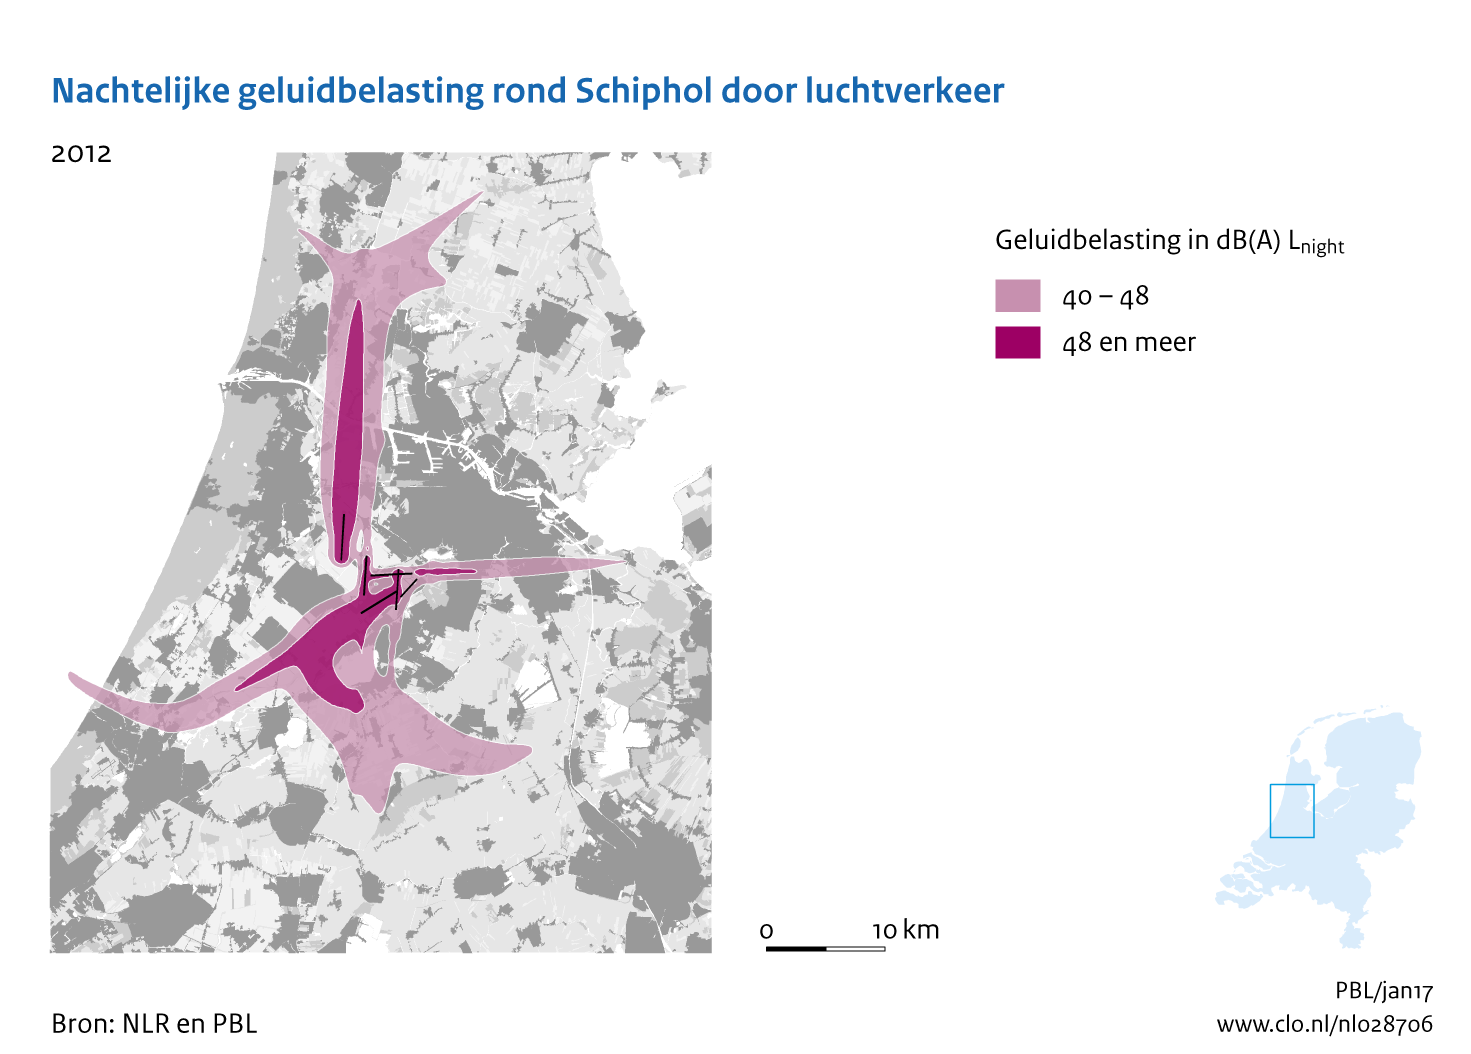 Figuur Nachtelijke geluidbelasting rond Schiphol door luchtverkeer, 2012. In de rest van de tekst wordt deze figuur uitgebreider uitgelegd.